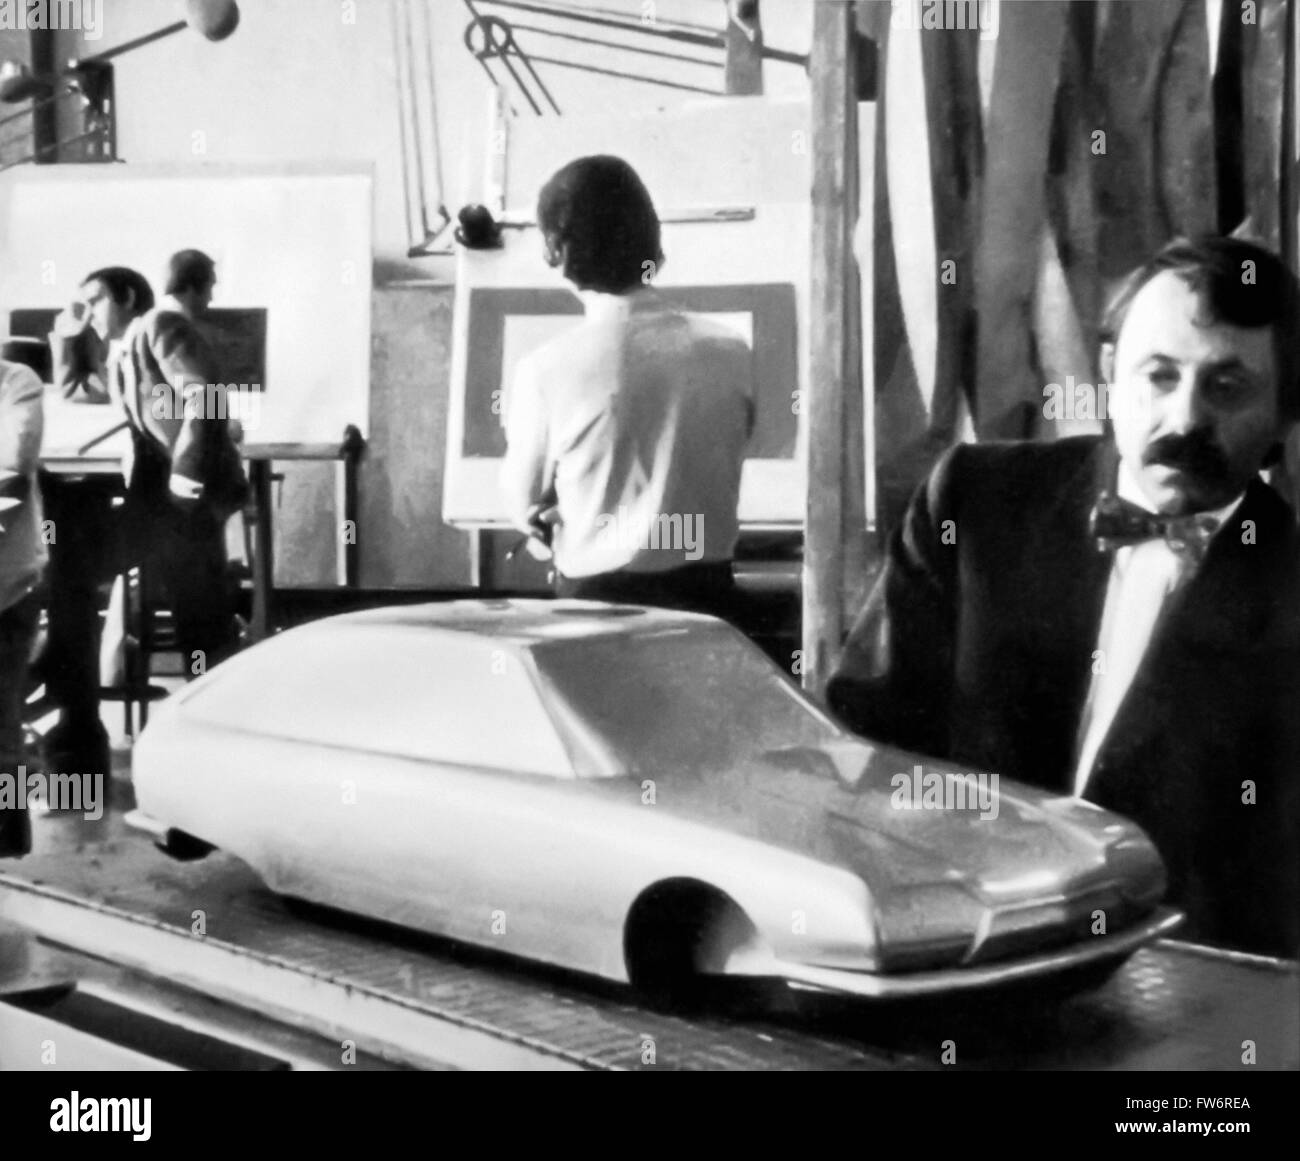 Robert Opron, concepteur de l'automobile française ici photographié à côté d'un modèle de la Citroën GS il a conçu. Photographie vers 1965. Banque D'Images